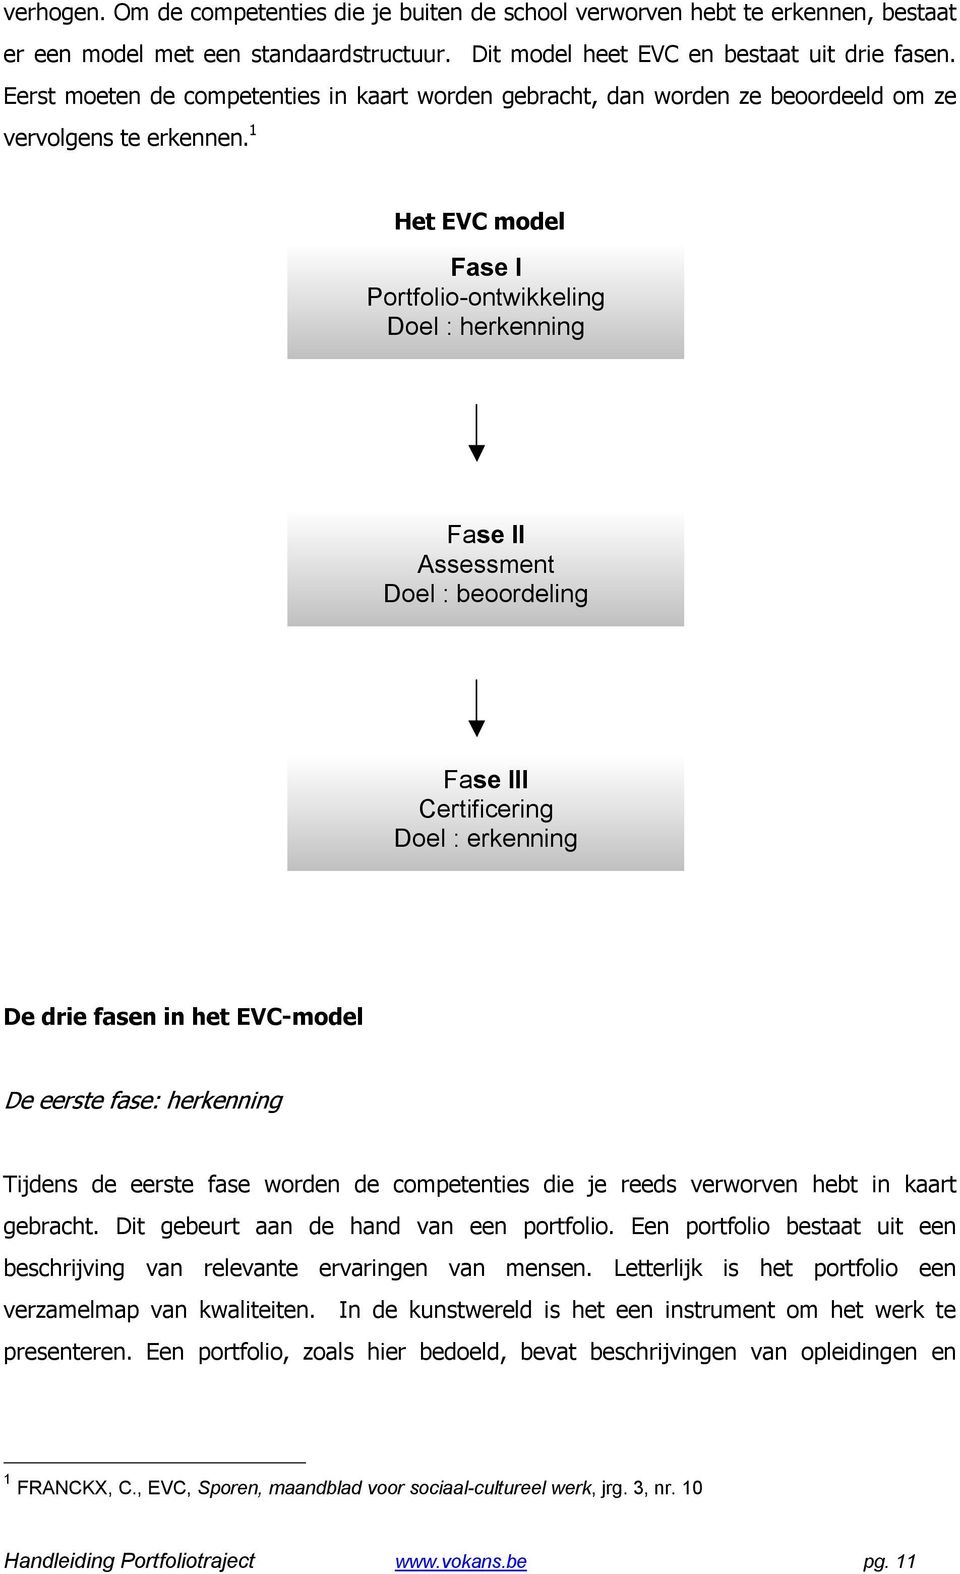 1 Het EVC model Fase I Portfolio-ontwikkeling Doel : herkenning Fase II Assessment Doel : beoordeling Fase III Certificering Doel : erkenning De drie fasen in het EVC-model De eerste fase: herkenning